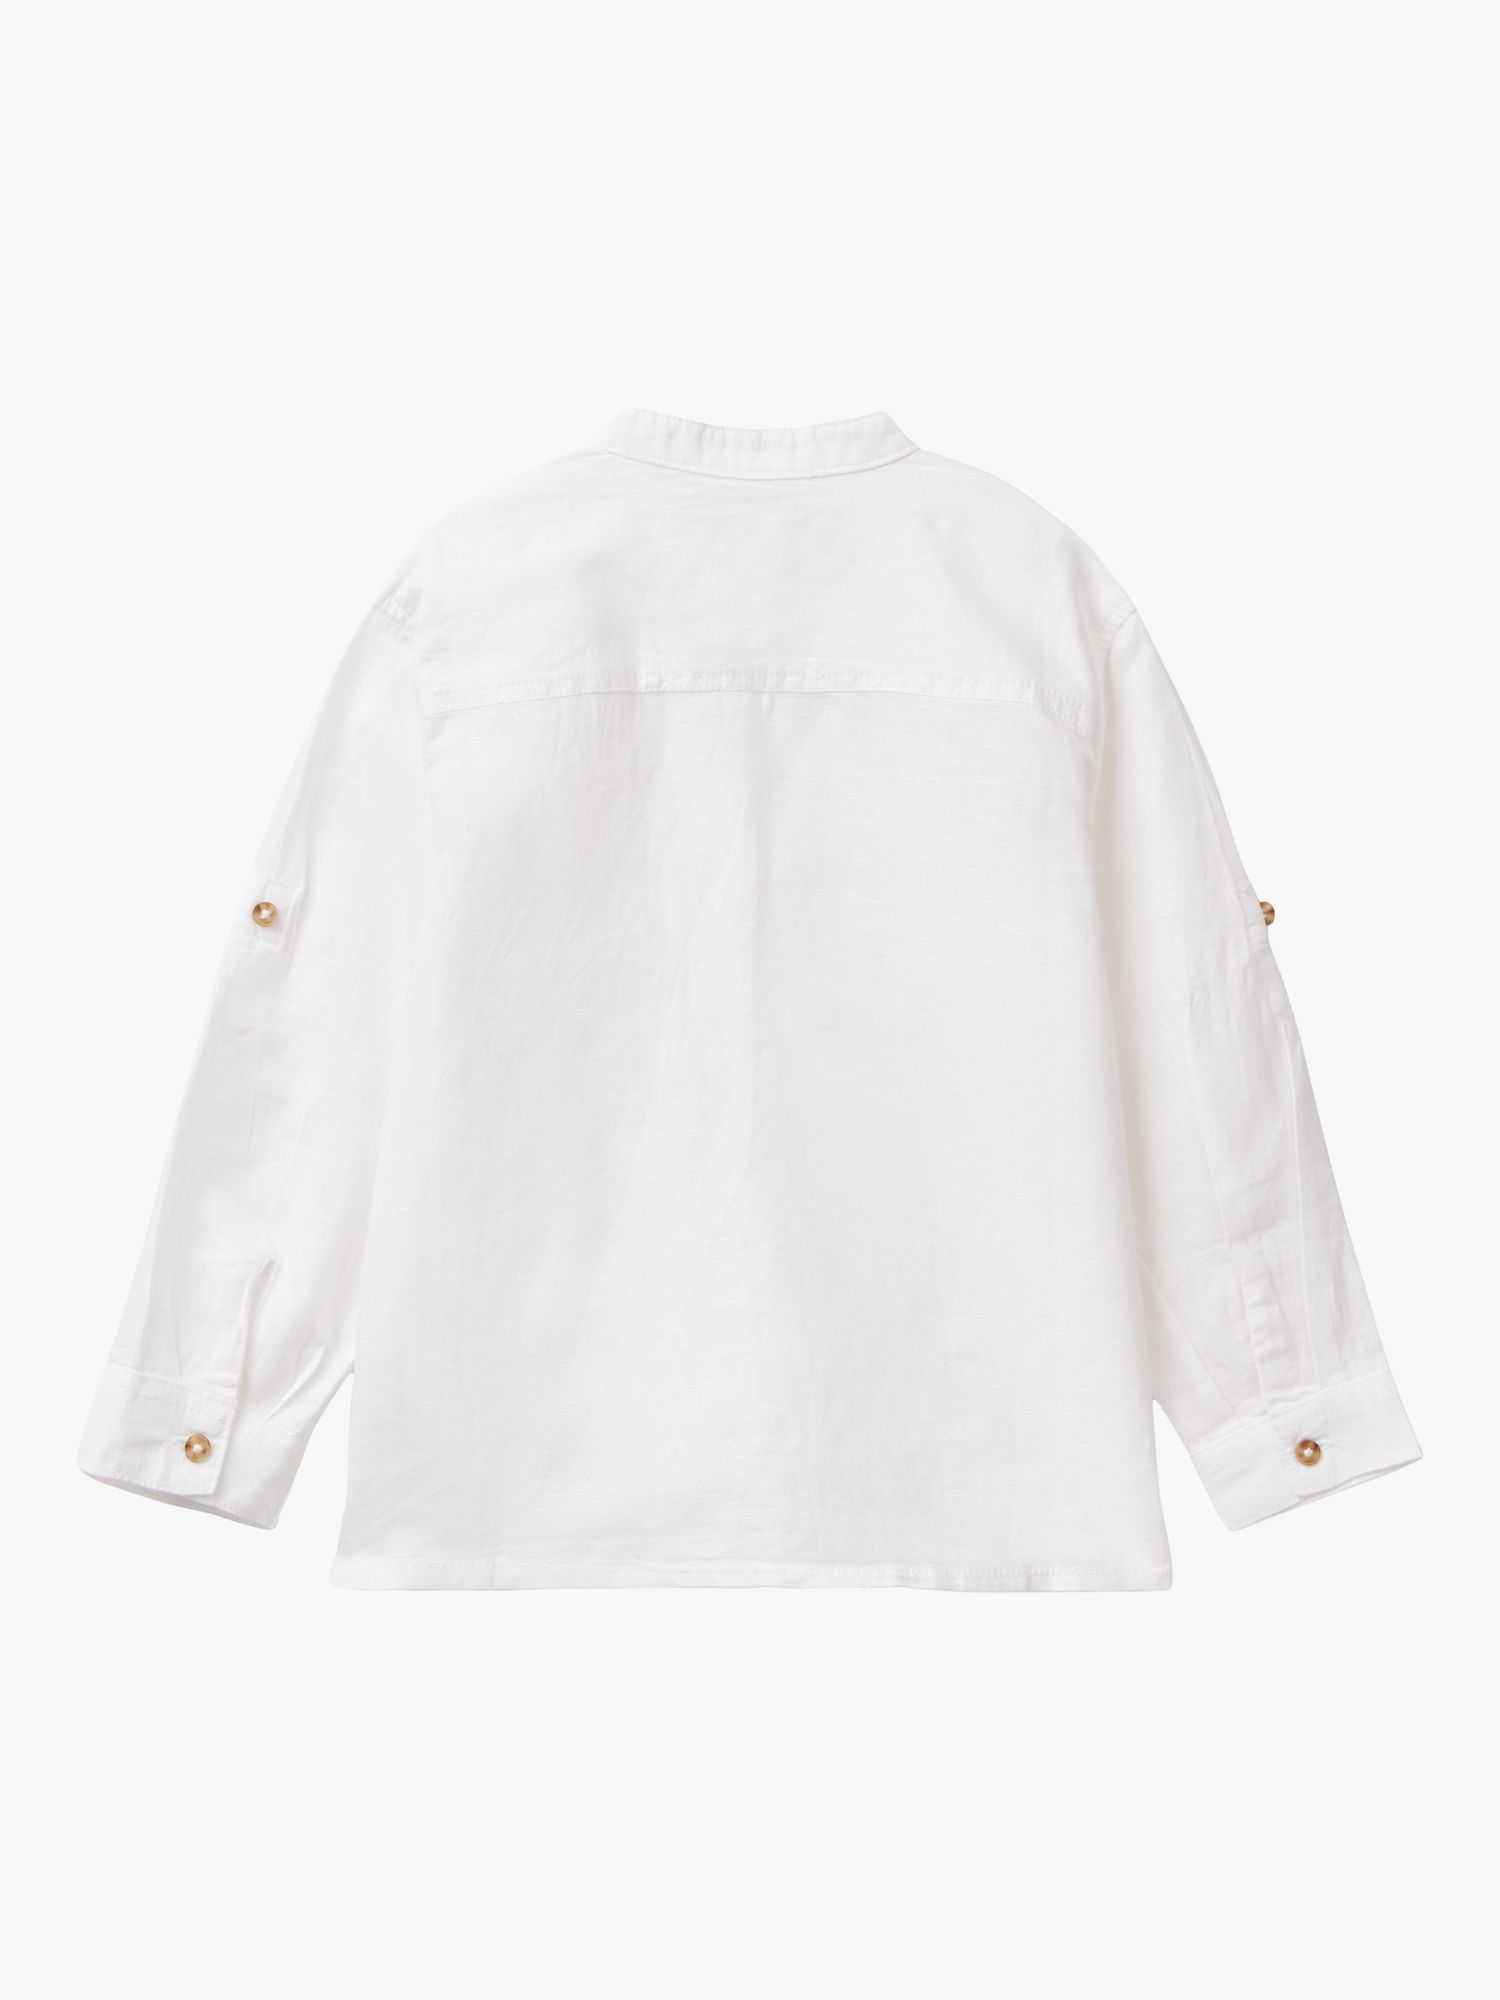 Benetton Kids' Korean Linen Blend Shirt, Optical White, 3-4 years